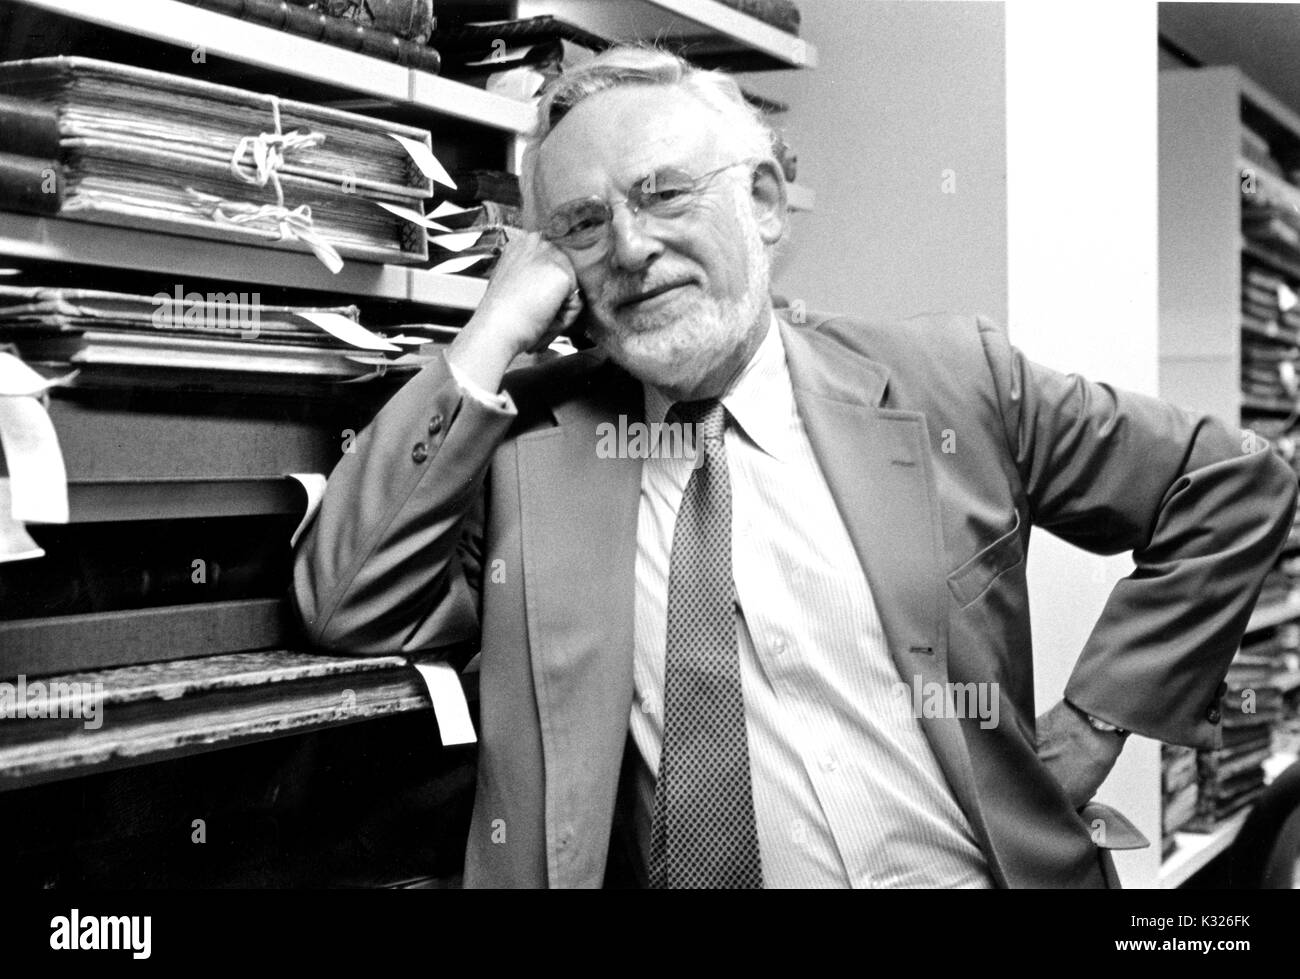 Jerome Melvin Edelstein, bibliographer und Gelehrter in vielen Bereichen der Geisteswissenschaften, lehnt sich gegen Regale holding Materialien aus Sondersammlungen der Bibliothek, 1990. Stockfoto